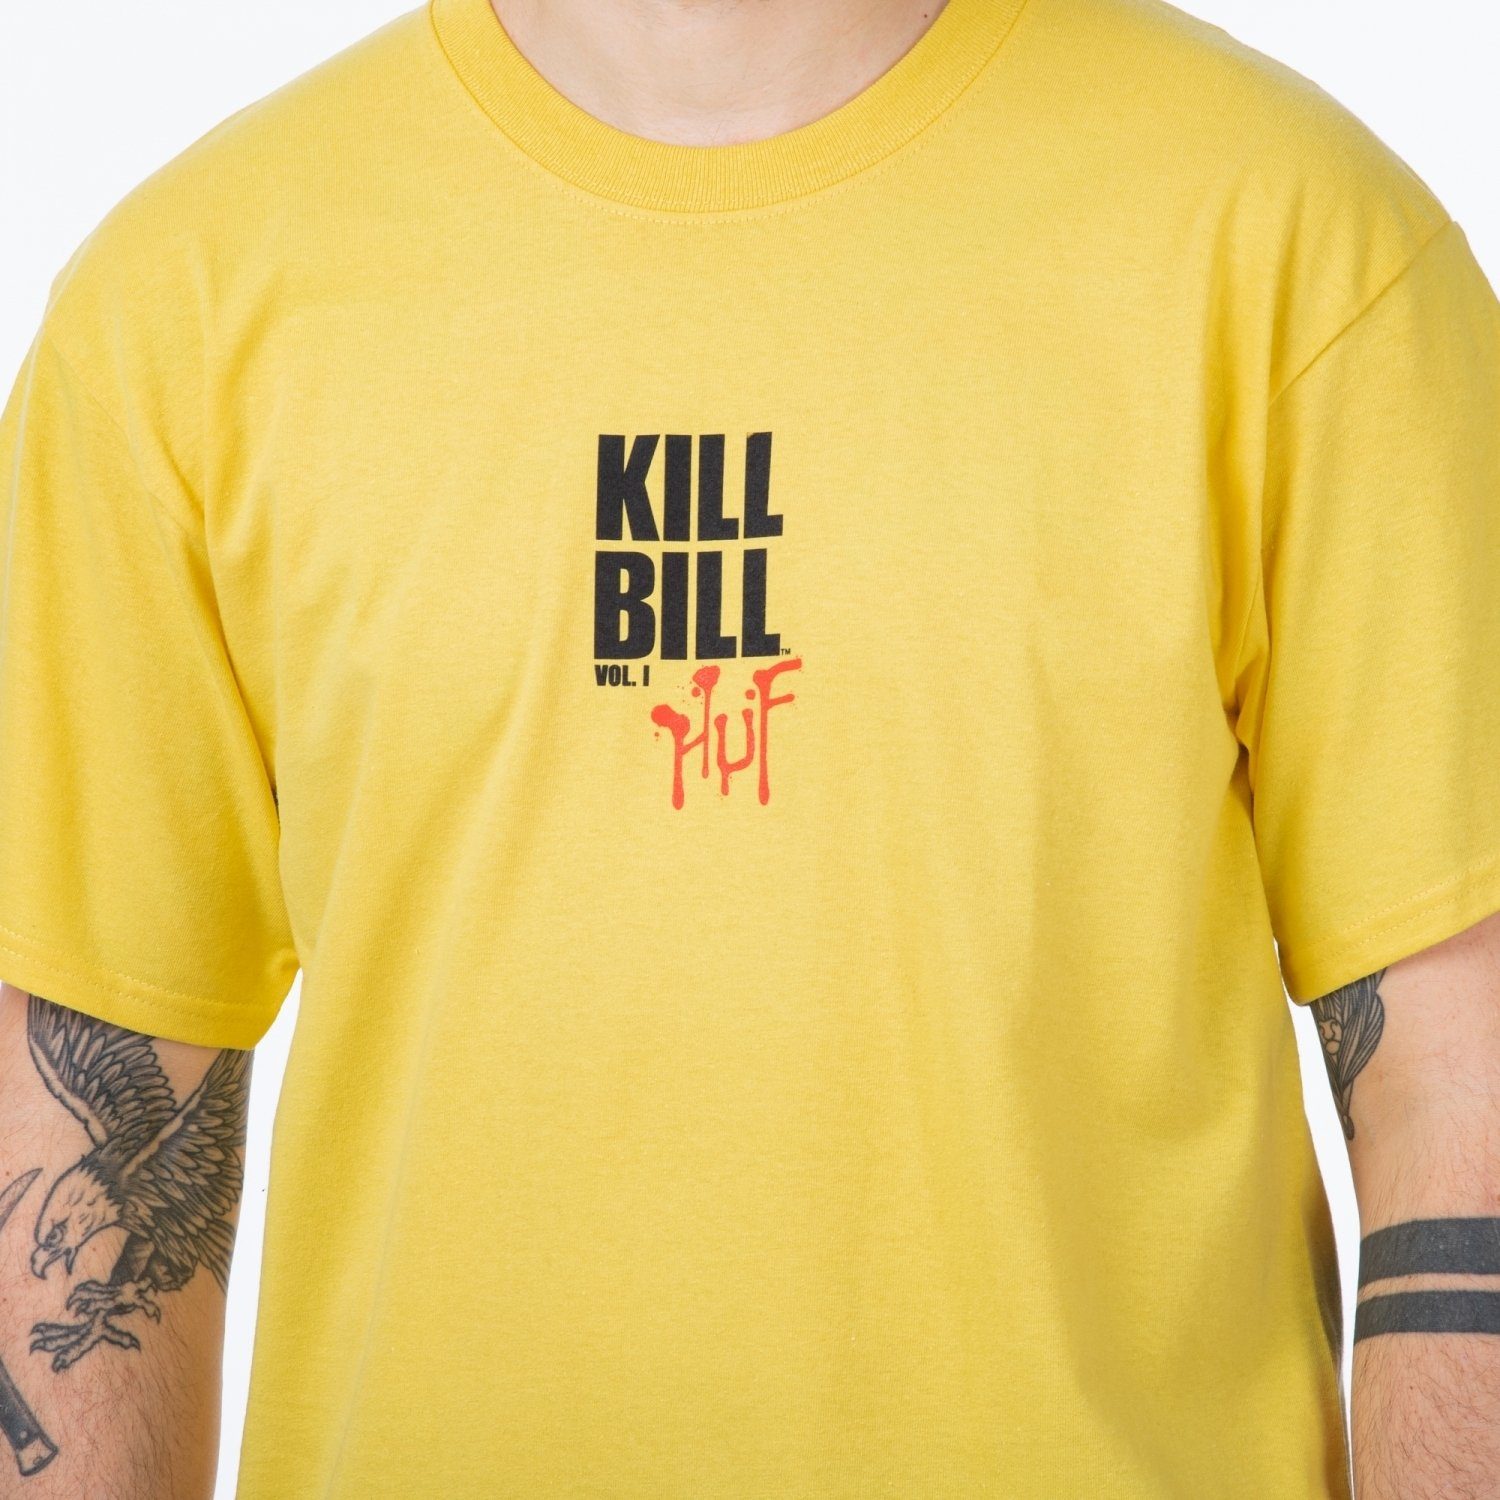 Bill HUF Kill T-Shirt HUF Tee Versus